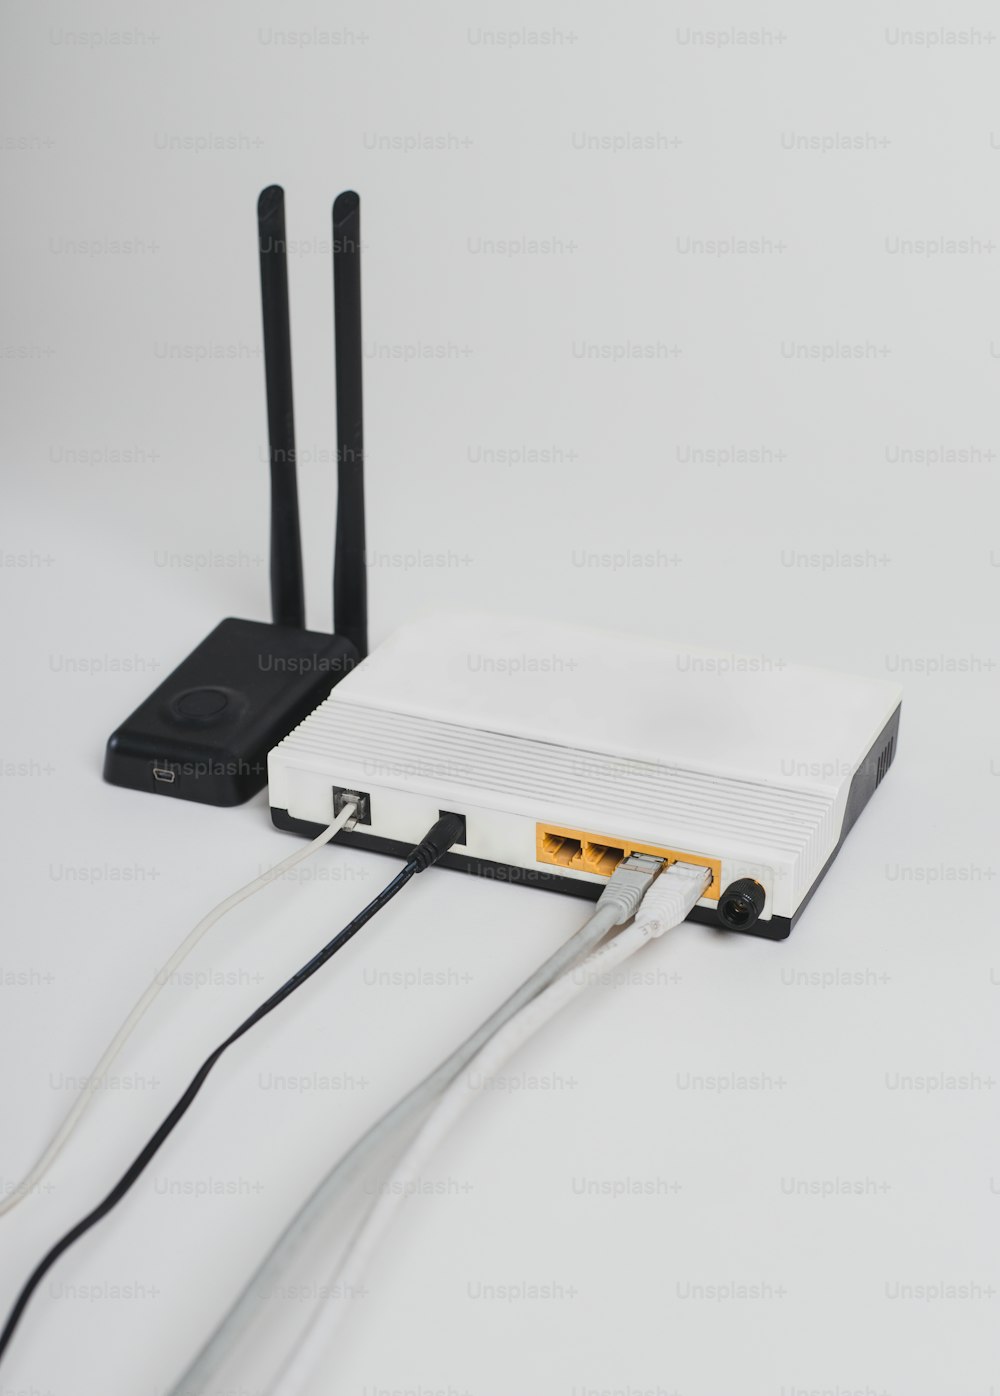 Un router collegato a un router su una superficie bianca